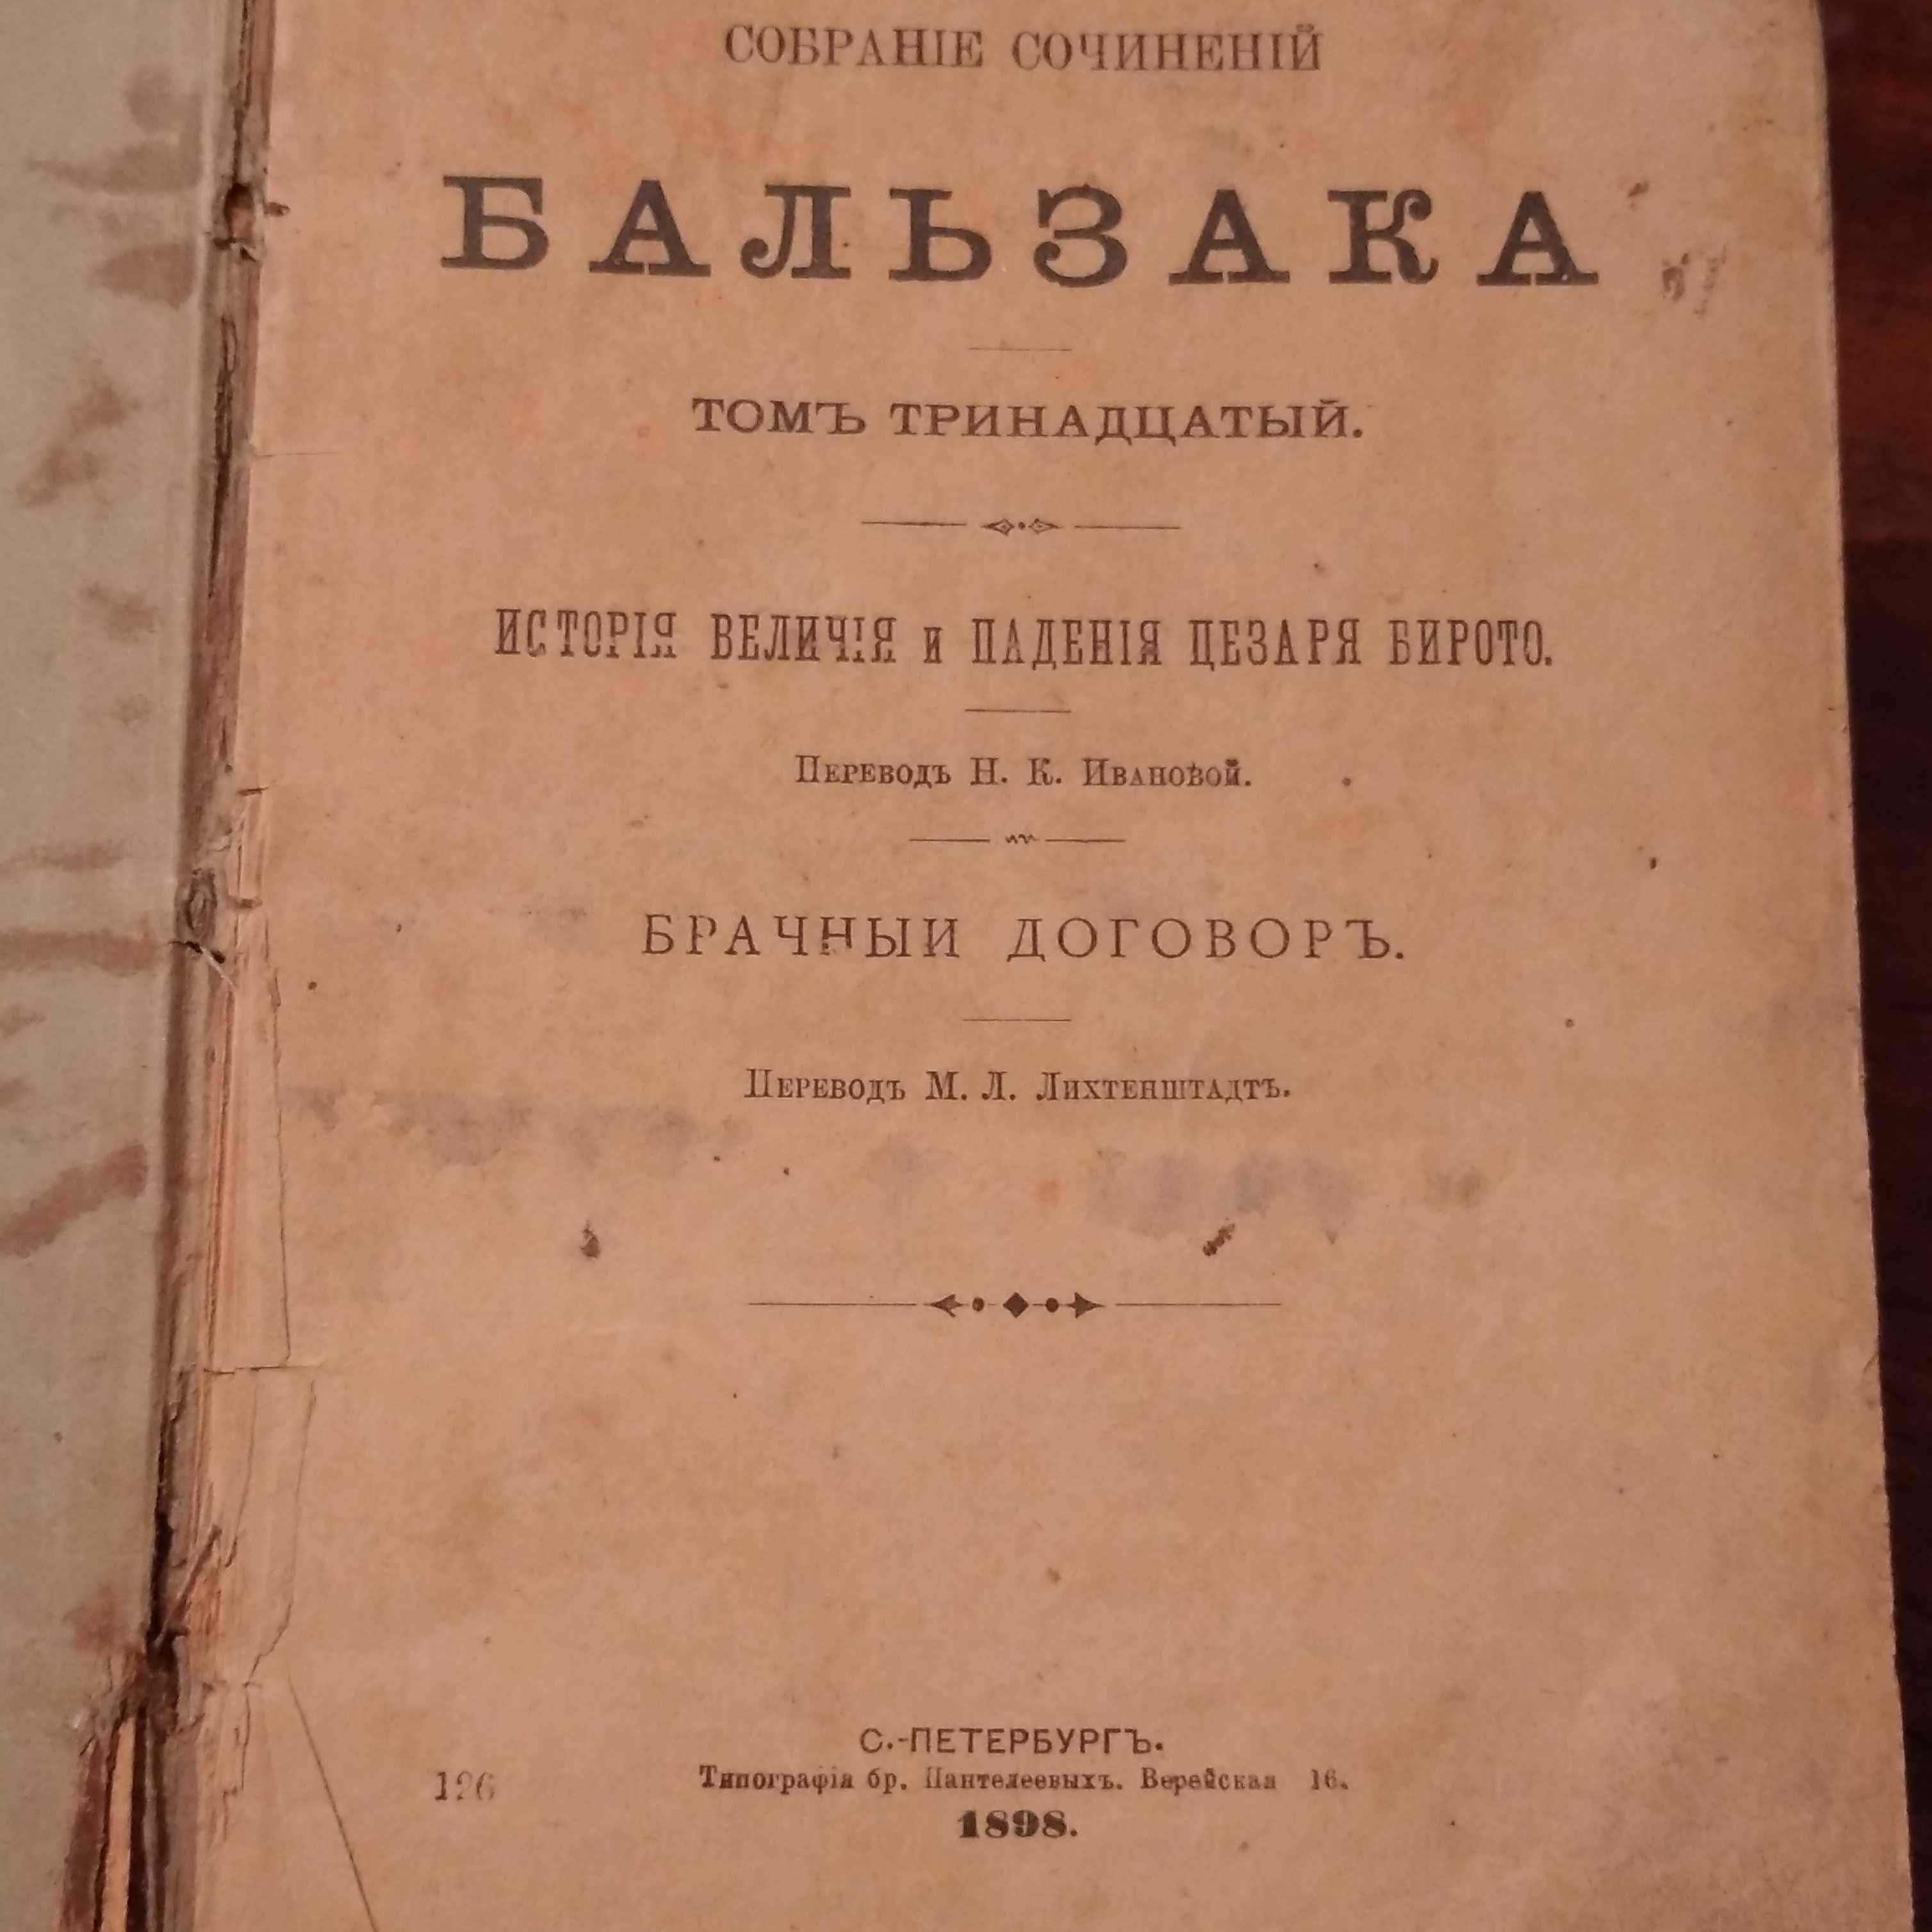 Бальзак История величия и падения Цезаря Бирито / Брачный договор 1898